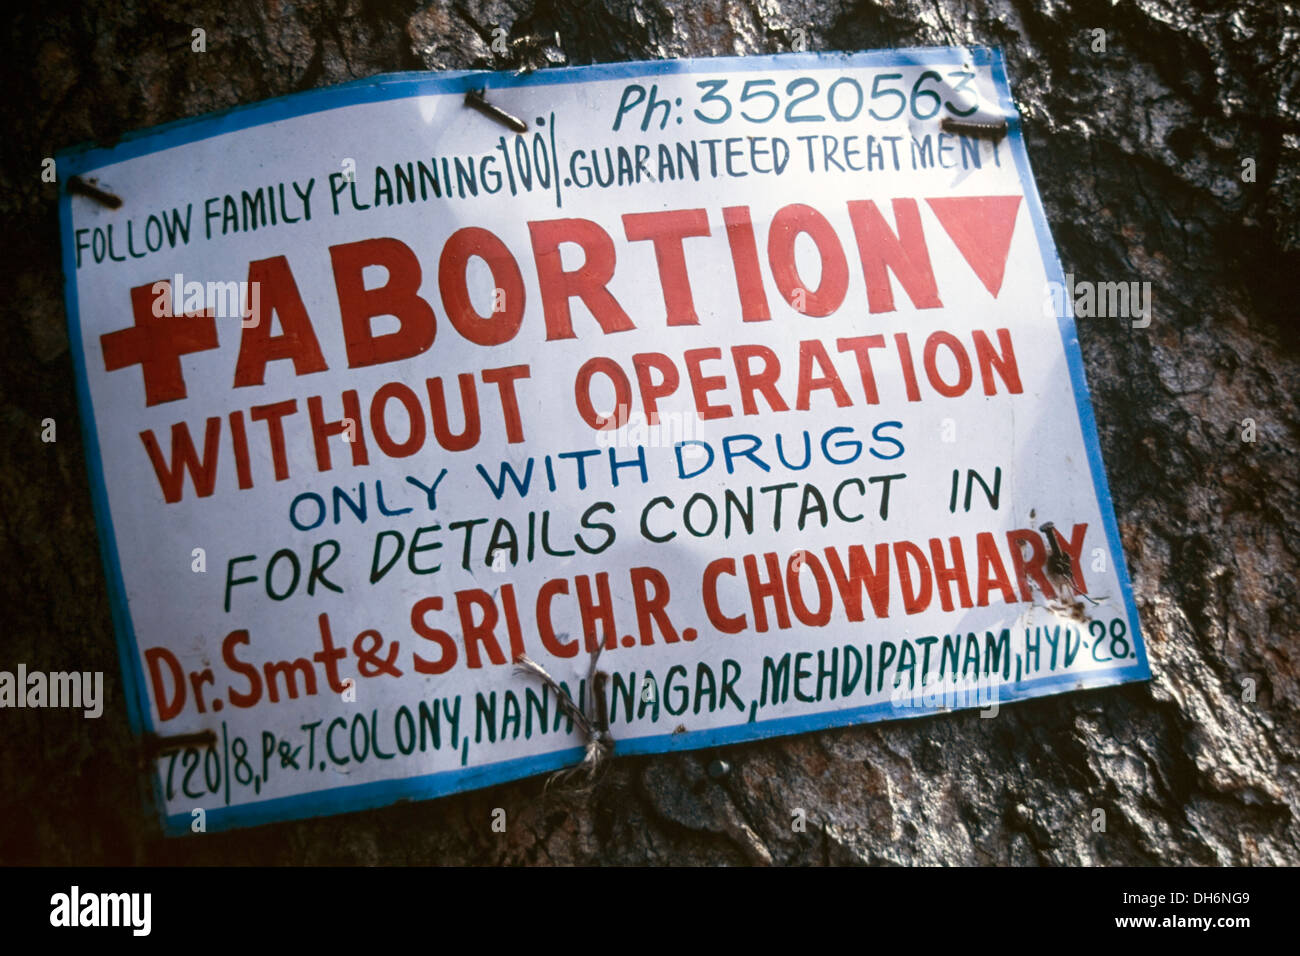 Cartel sobre un árbol publicidad ofreciendo clínicas de abortos sin operaciones usando sólo medicamentos hyderabad india Foto de stock